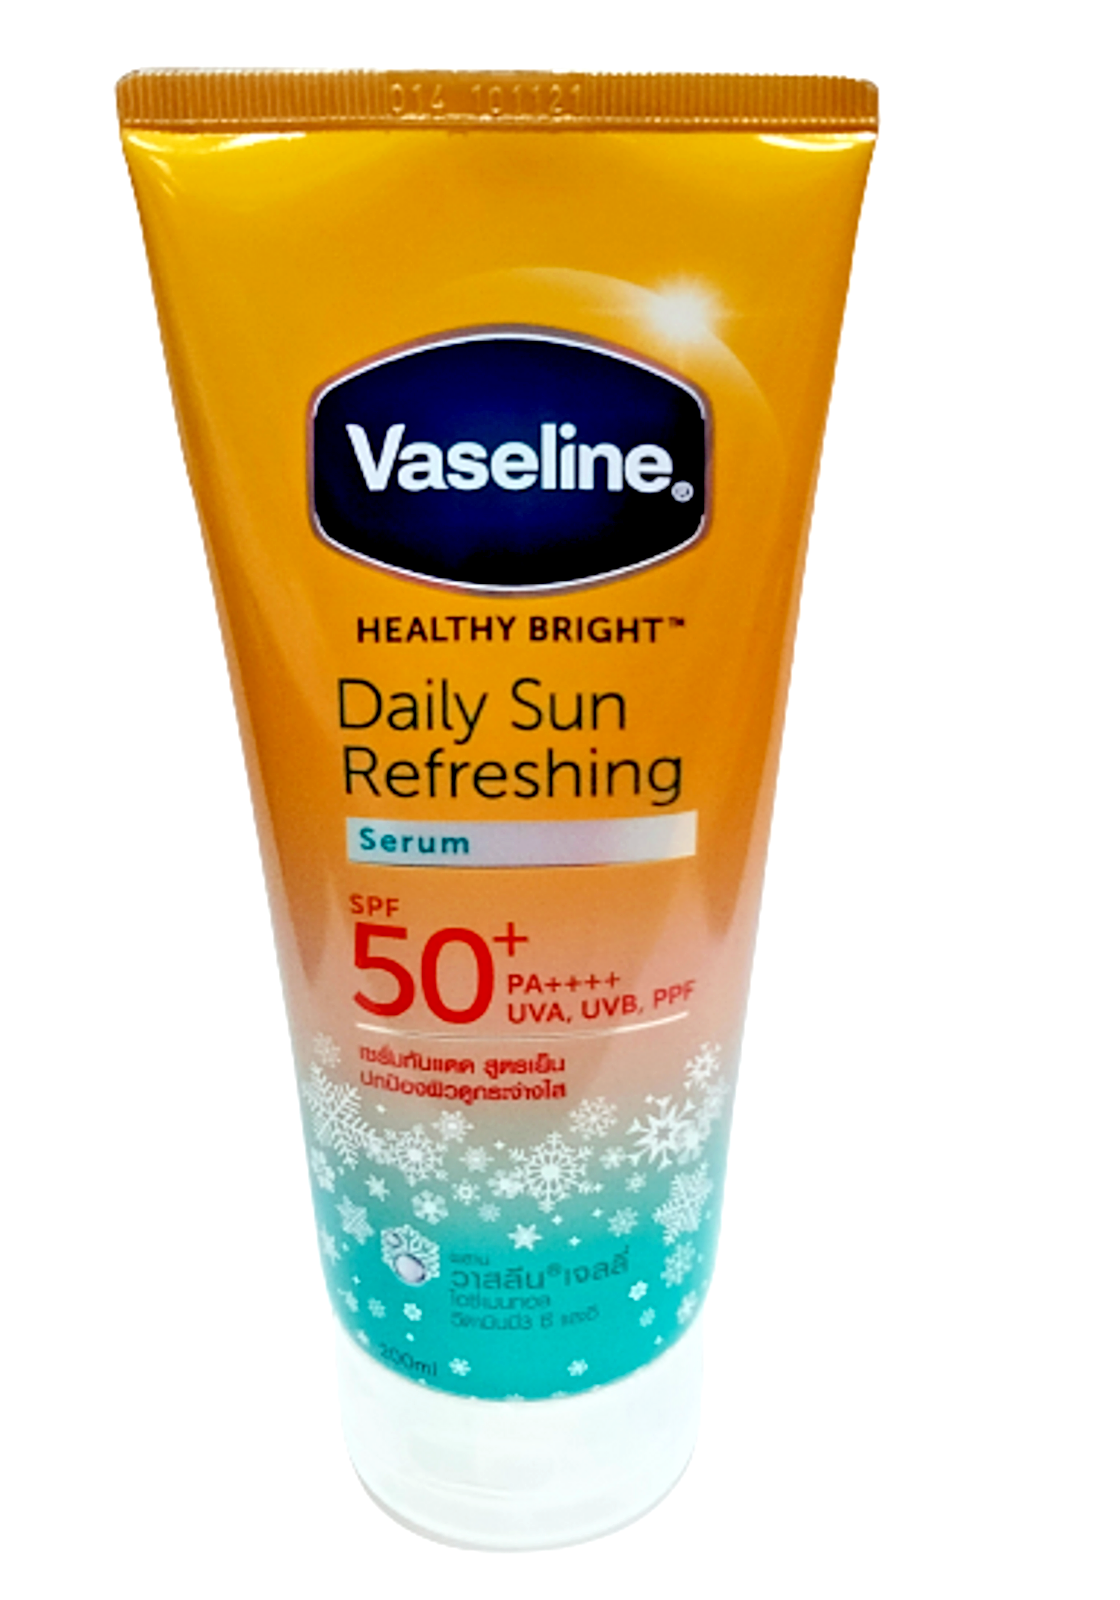 Vaseline Daily Sun Refreshing Serum 